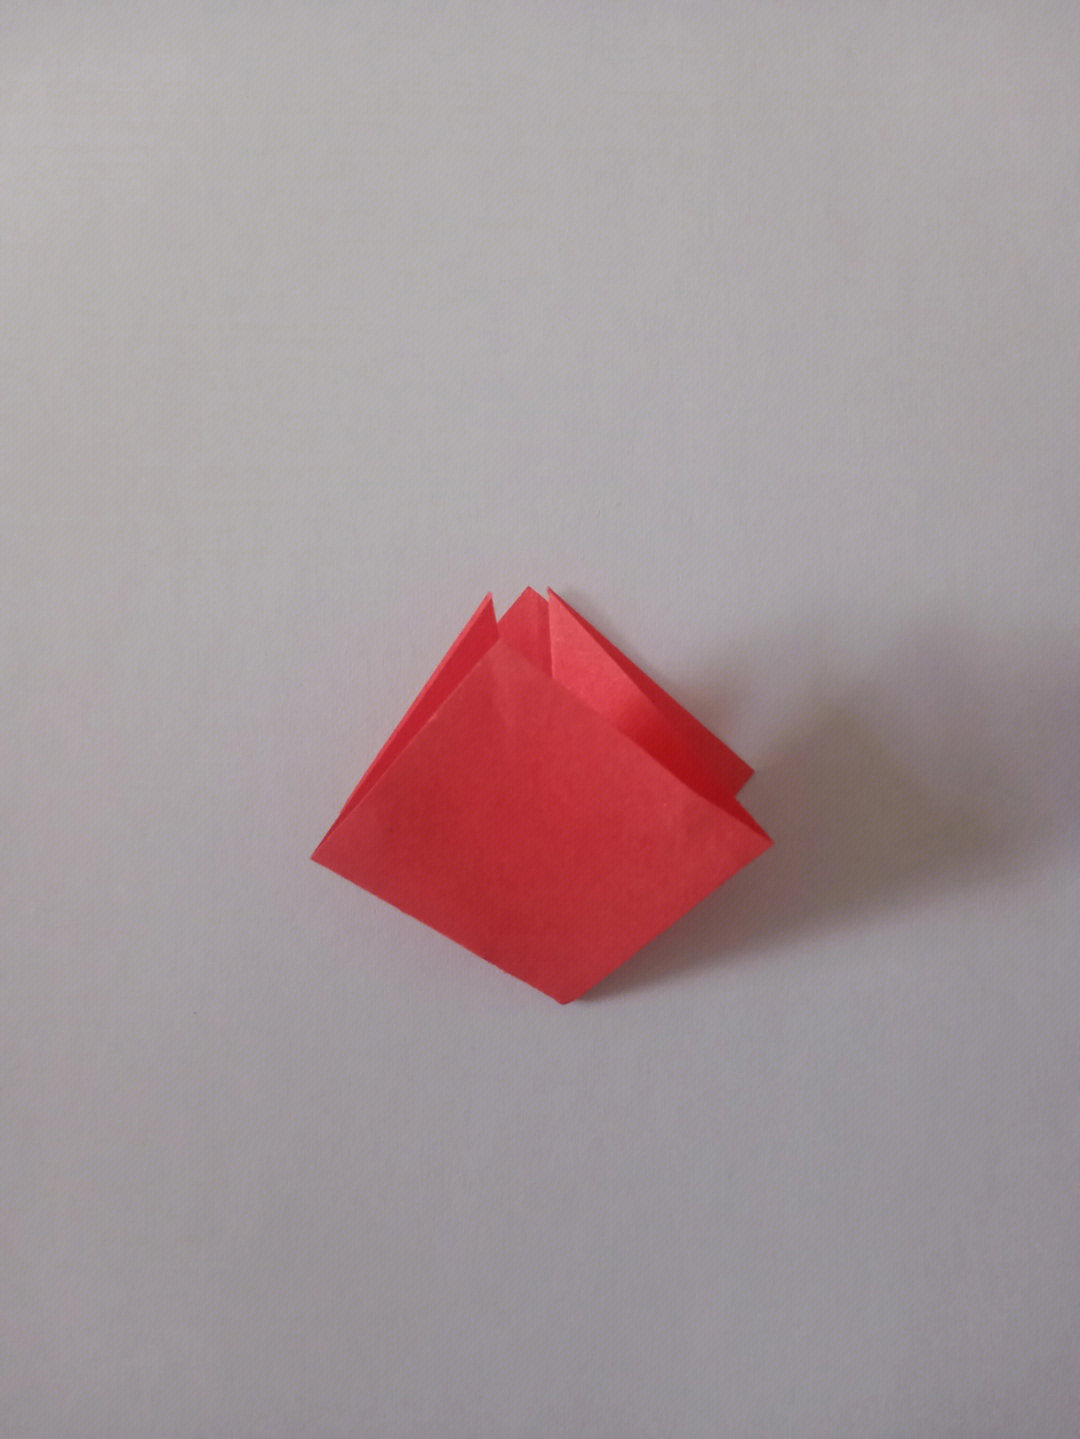 千纸鹤的折法图解双头图片